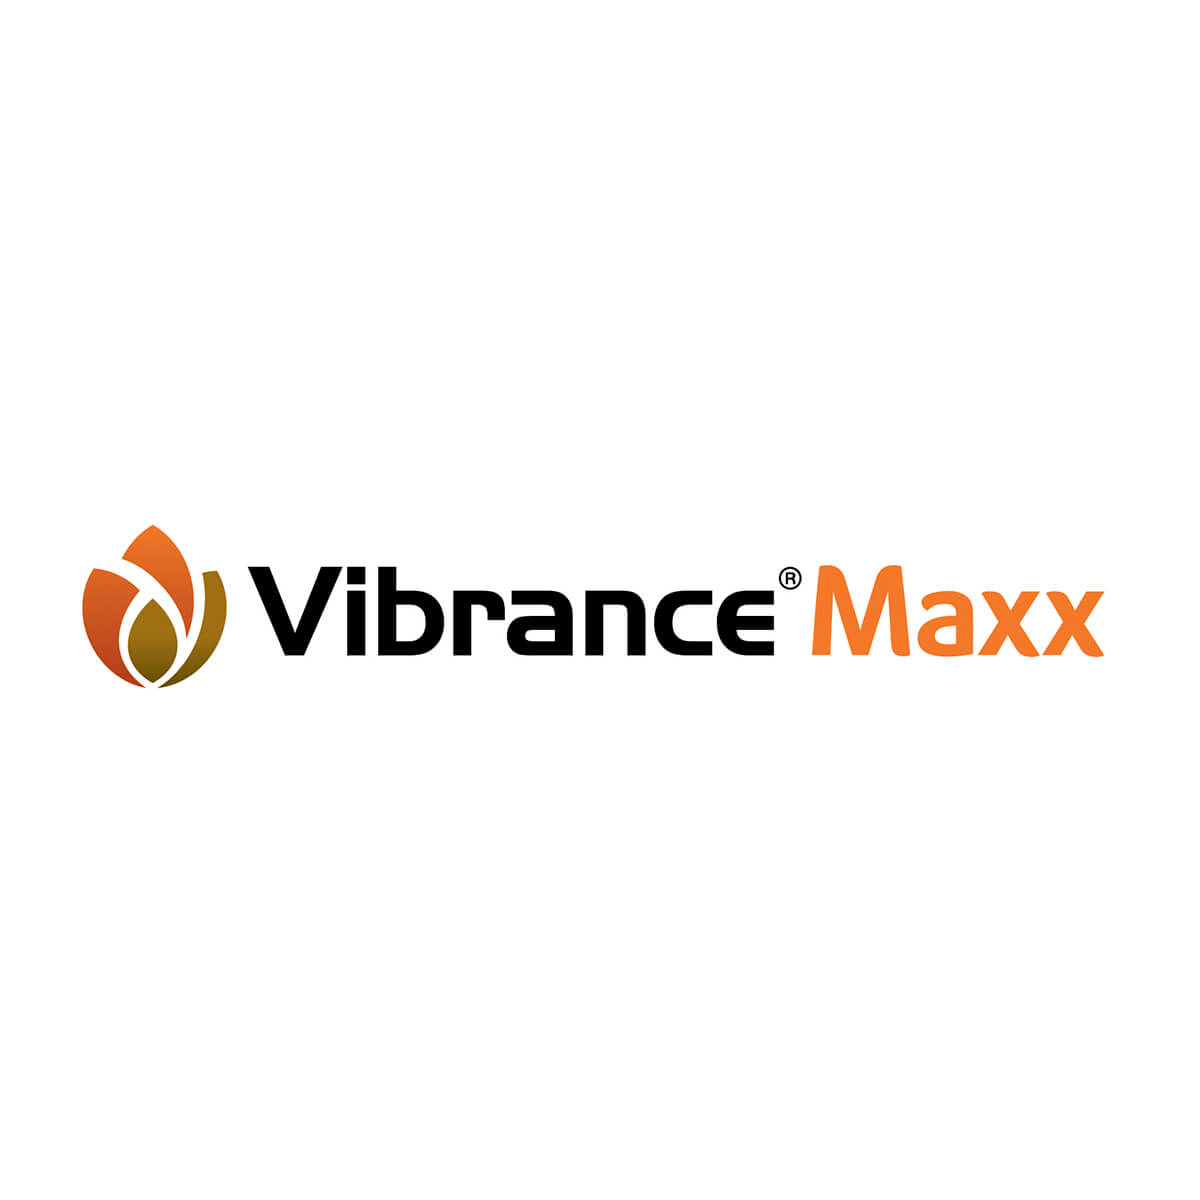 VIBRANCE MAXX RFC 3.075L